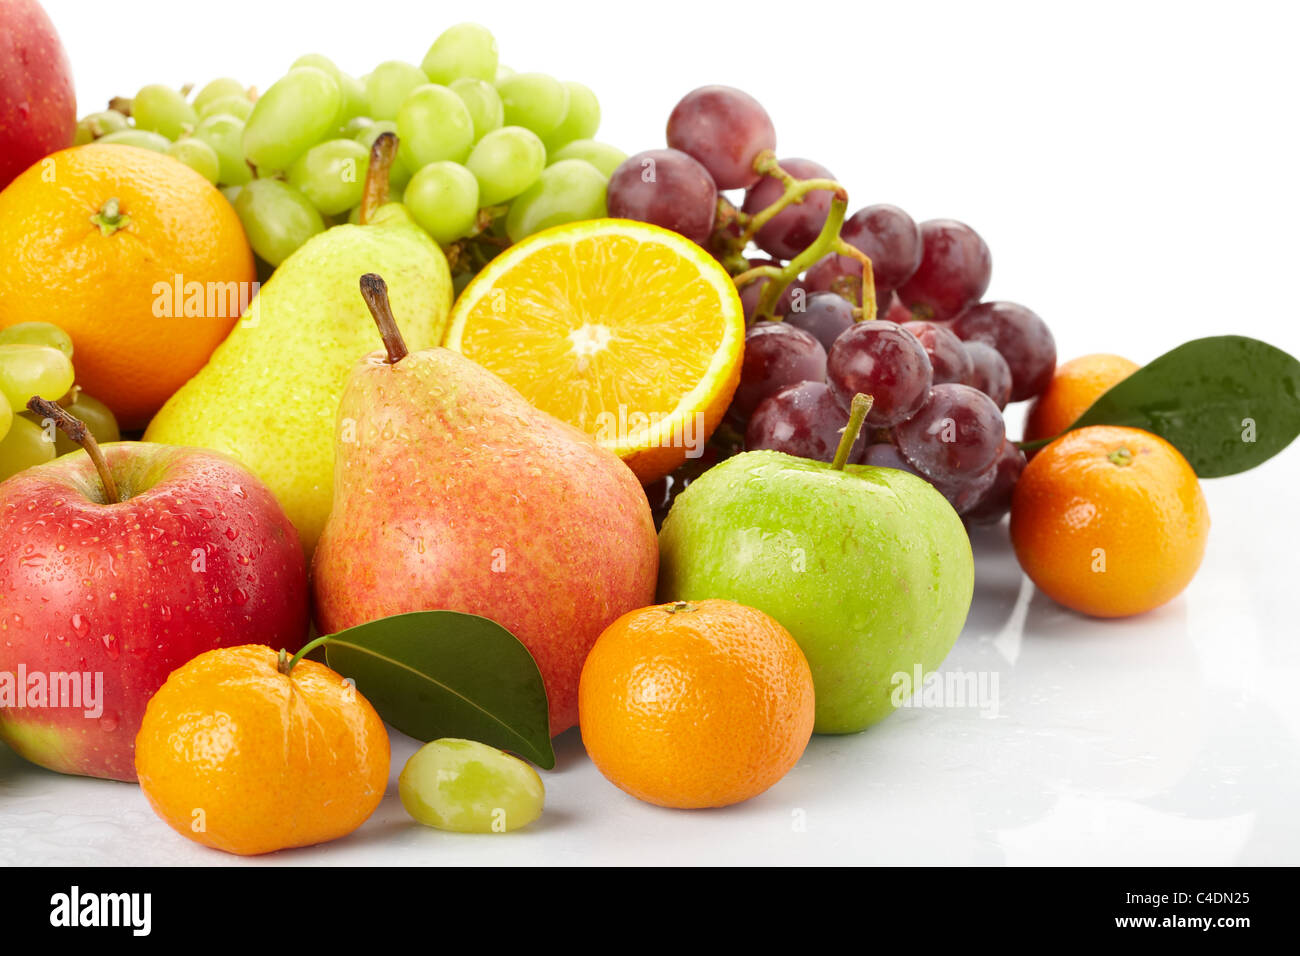 Польза фруктов для здоровья. Фрукты для здоровья. Фрукты картинки. Фруктового здоровья. Полезные фрукты фото.